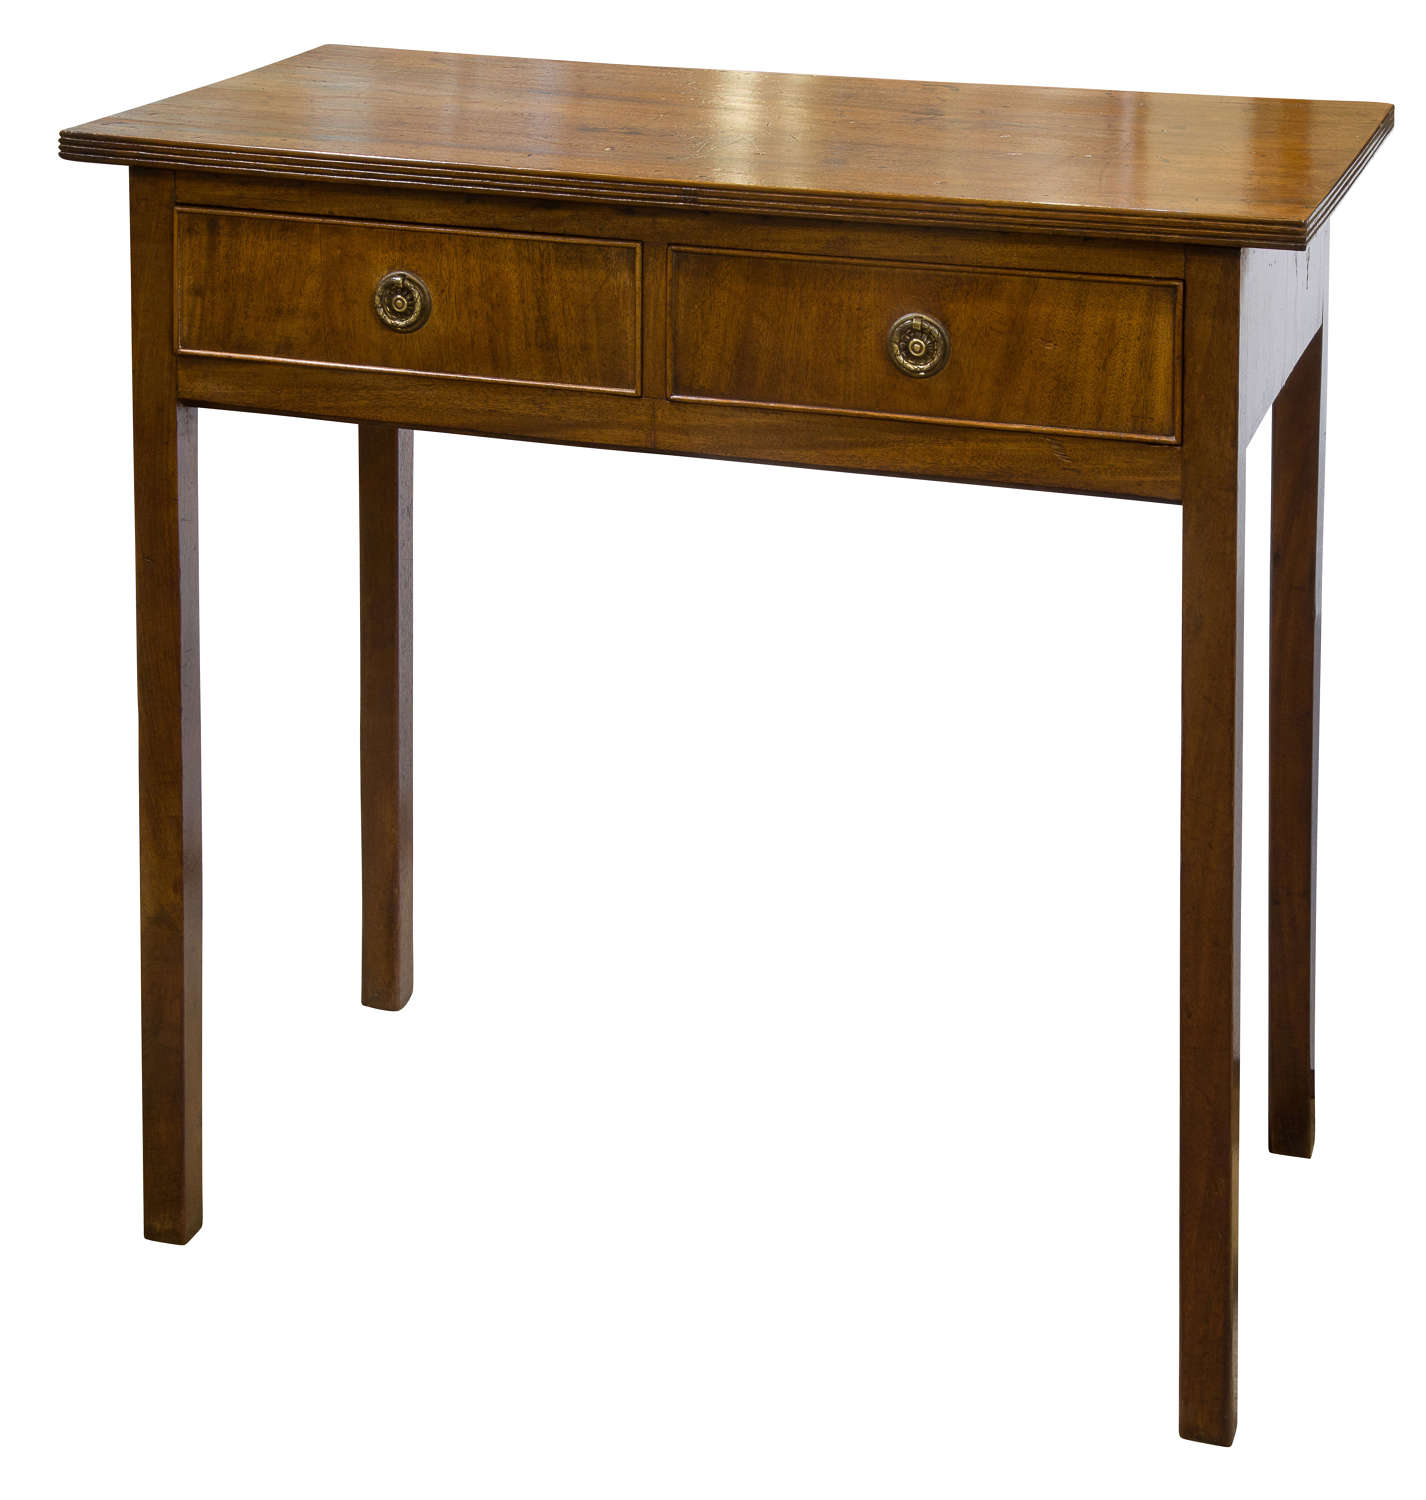 19thc mahogany side table